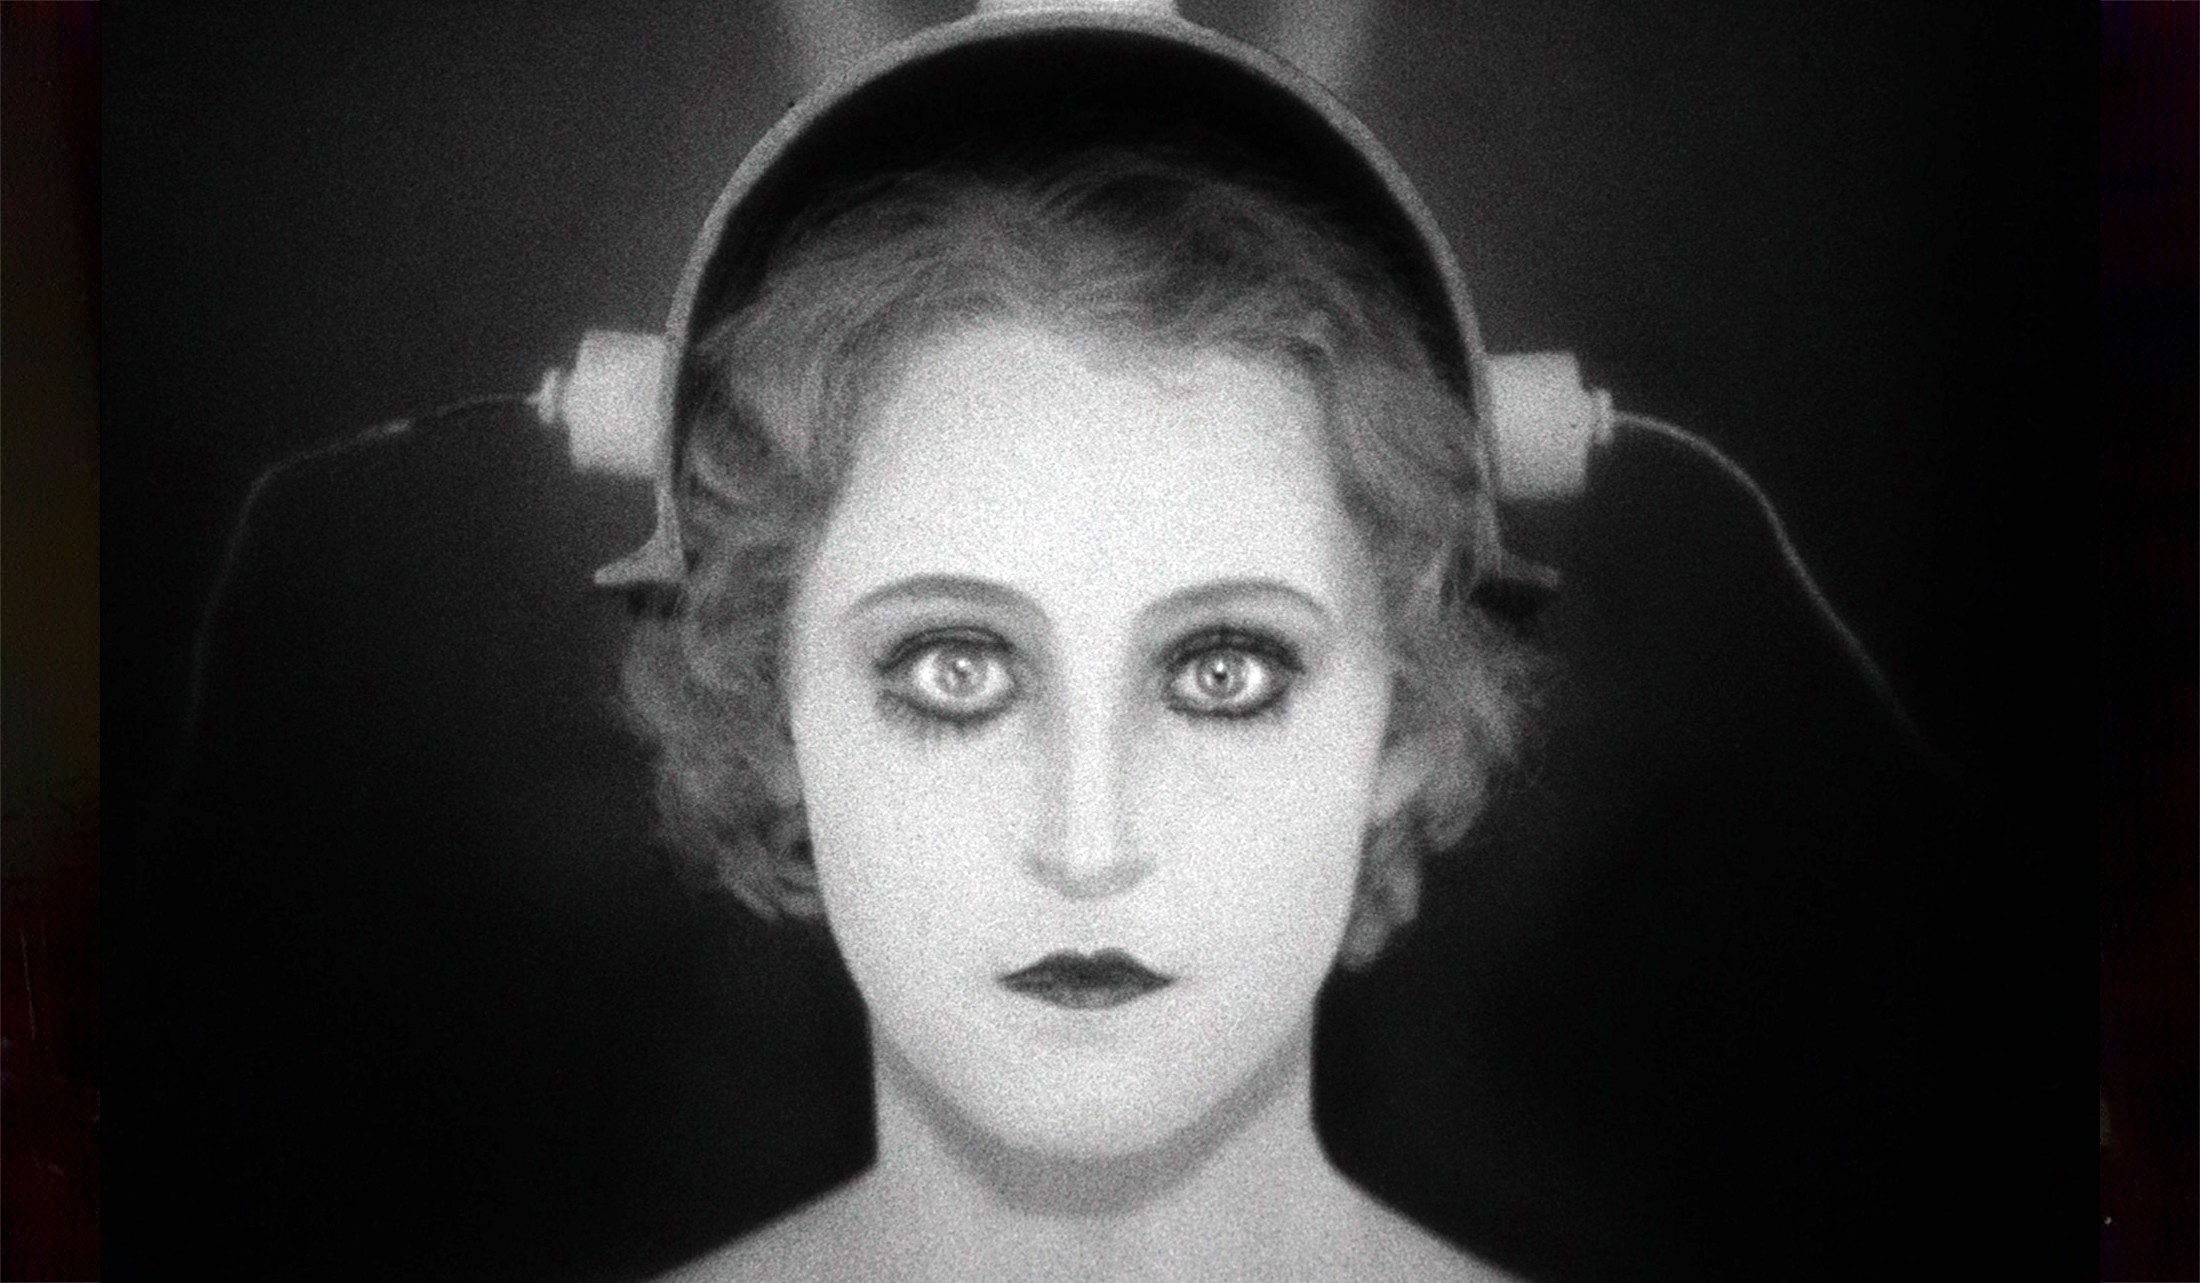 Μetropolis: Σπάνια ευκαιρία να δούμε τη μη λογοκριμένη εκδοχή του αριστουργήματος του Fritz Lang